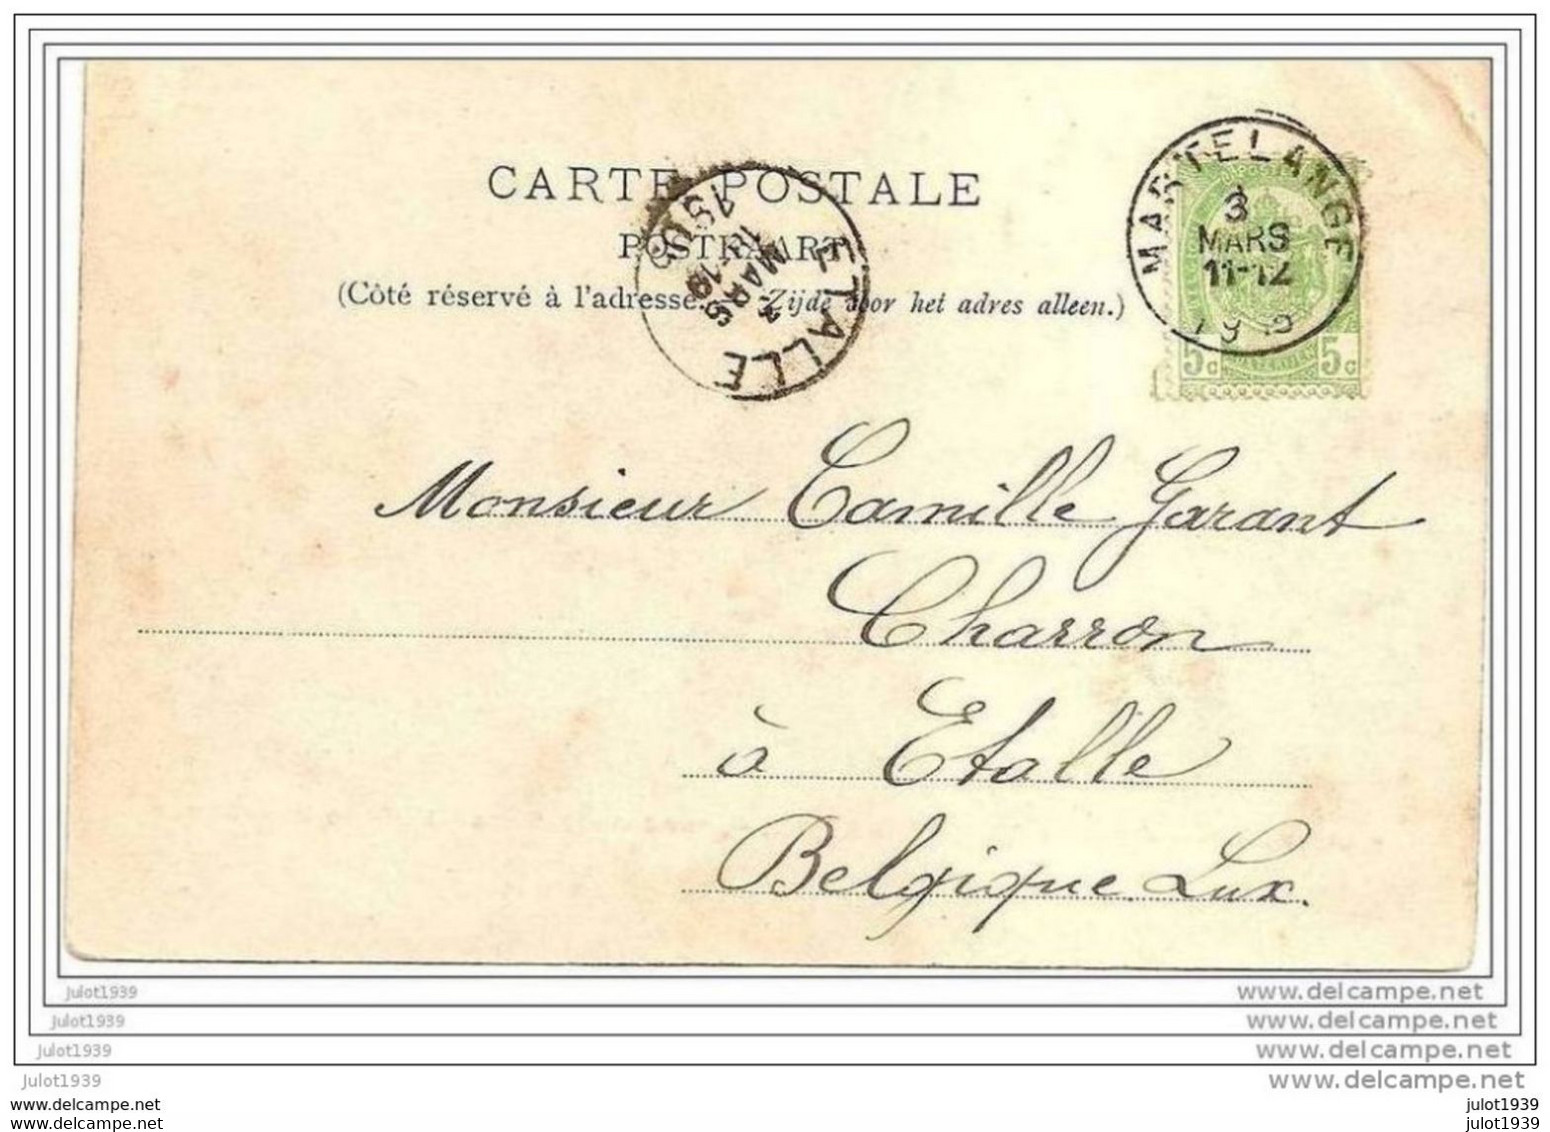 ETALLE ..-- BODANGE ..-- Maison Van Bever . 1905 Vers ETALLE ( Mr Camille GARANT , CHARRON ) . Voir Verso . - Etalle